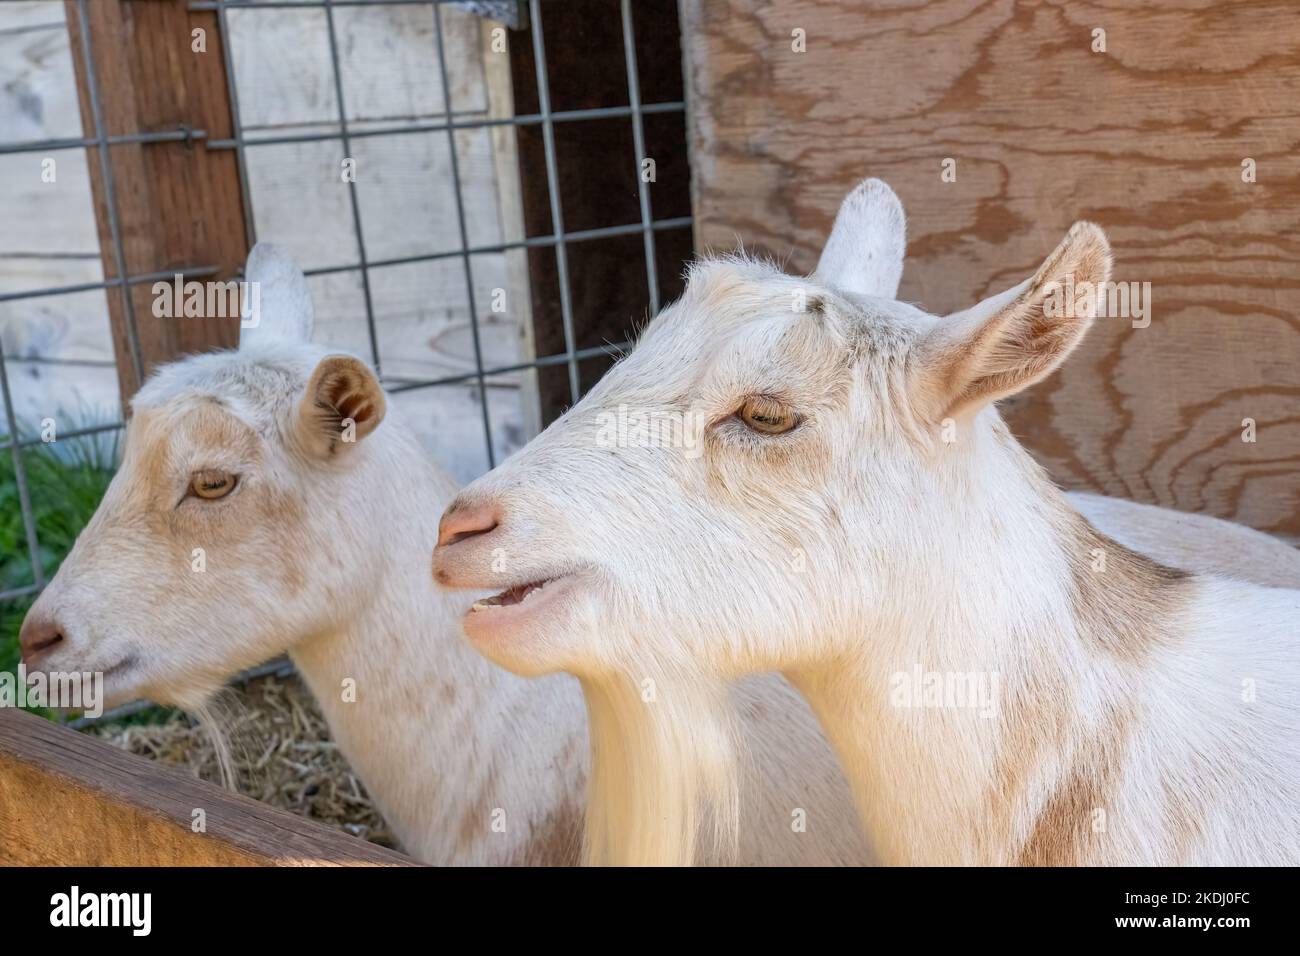 Chimacum, Washington, EE.UU. Dos cabras enanas nigerianas blancas descansando Foto de stock